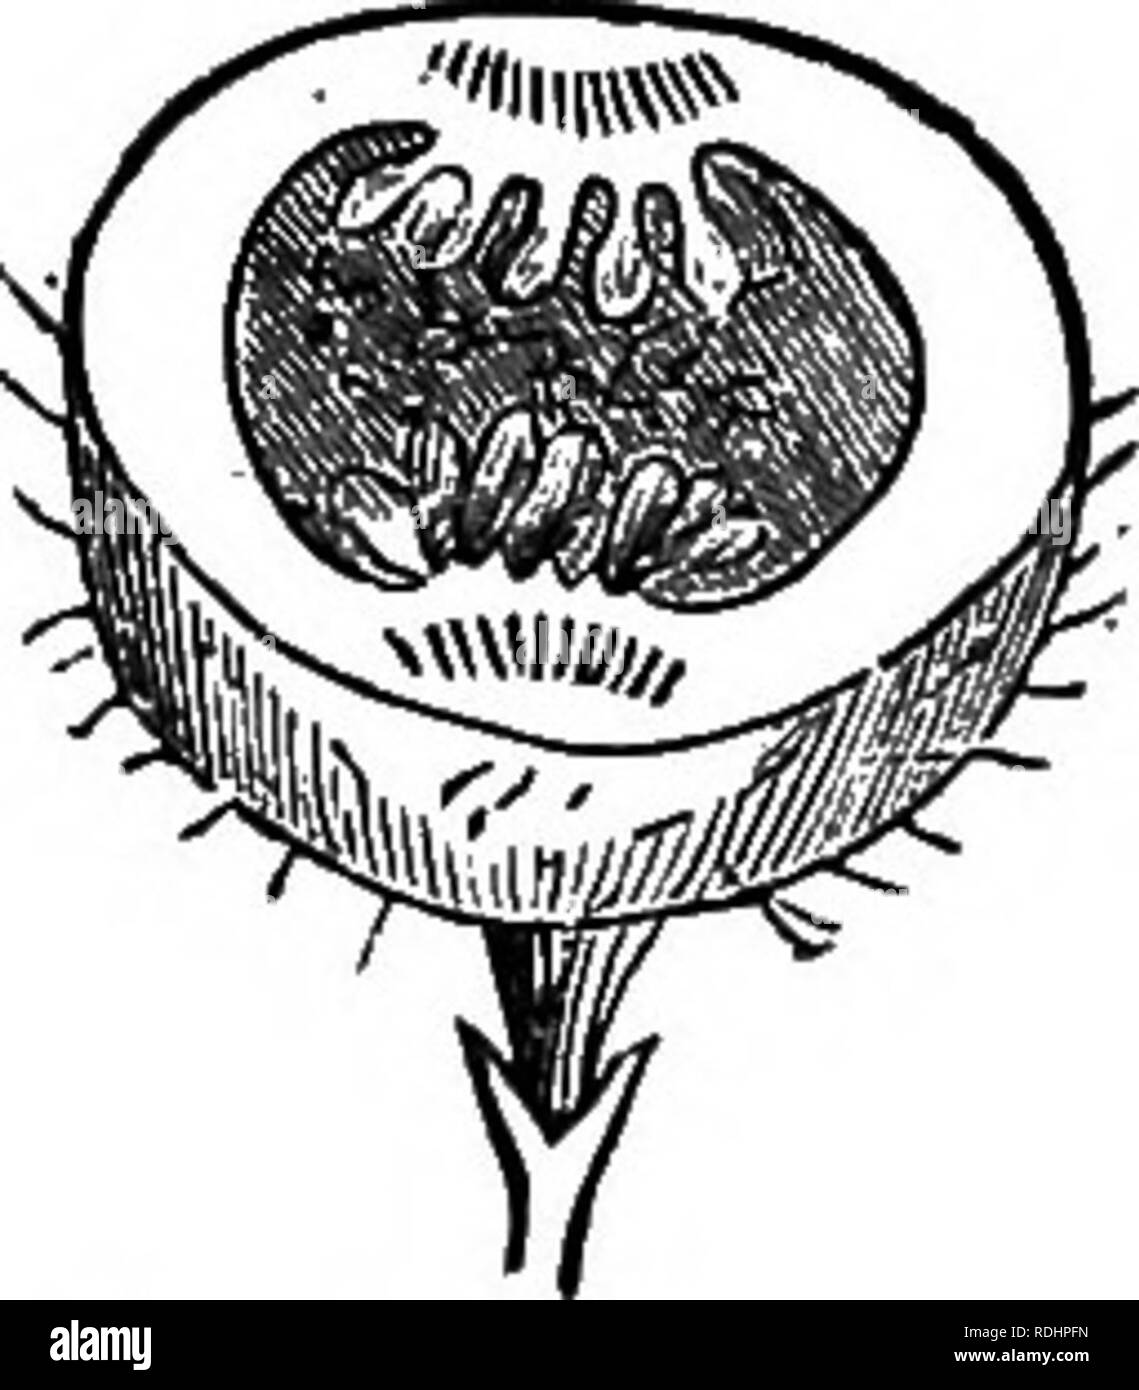 . Botanik für Akademien und Hochschulen: bestehend aus der Entwicklung und Struktur von Algen zu Clematis. Botanik; 1889. 144 akademische BOTANT.. das wird 1-celled und 1 - zum Zeitpunkt der Reife gesät. In der Ahorn (Abb. 205) Jede Frucht hat zwei samarse United an der Basis. In der Asche gibt es zu jeder Blüte; seine lange Flügel gibt ihm den Namen languette (kleine Zunge, T"r.). In der Ailanthus und Elm die Samara ist rund um geflügelt. 349. Die Prostaticus, ein akaine mit einem aufgepumpten Fruchthülle, wie in der Pigweed. 350. Die Brasilien - Mutter (Abb. 201) ist in der Regel als Mutter eingestuft, aber es ist vielen - gesät und hat Stockfoto